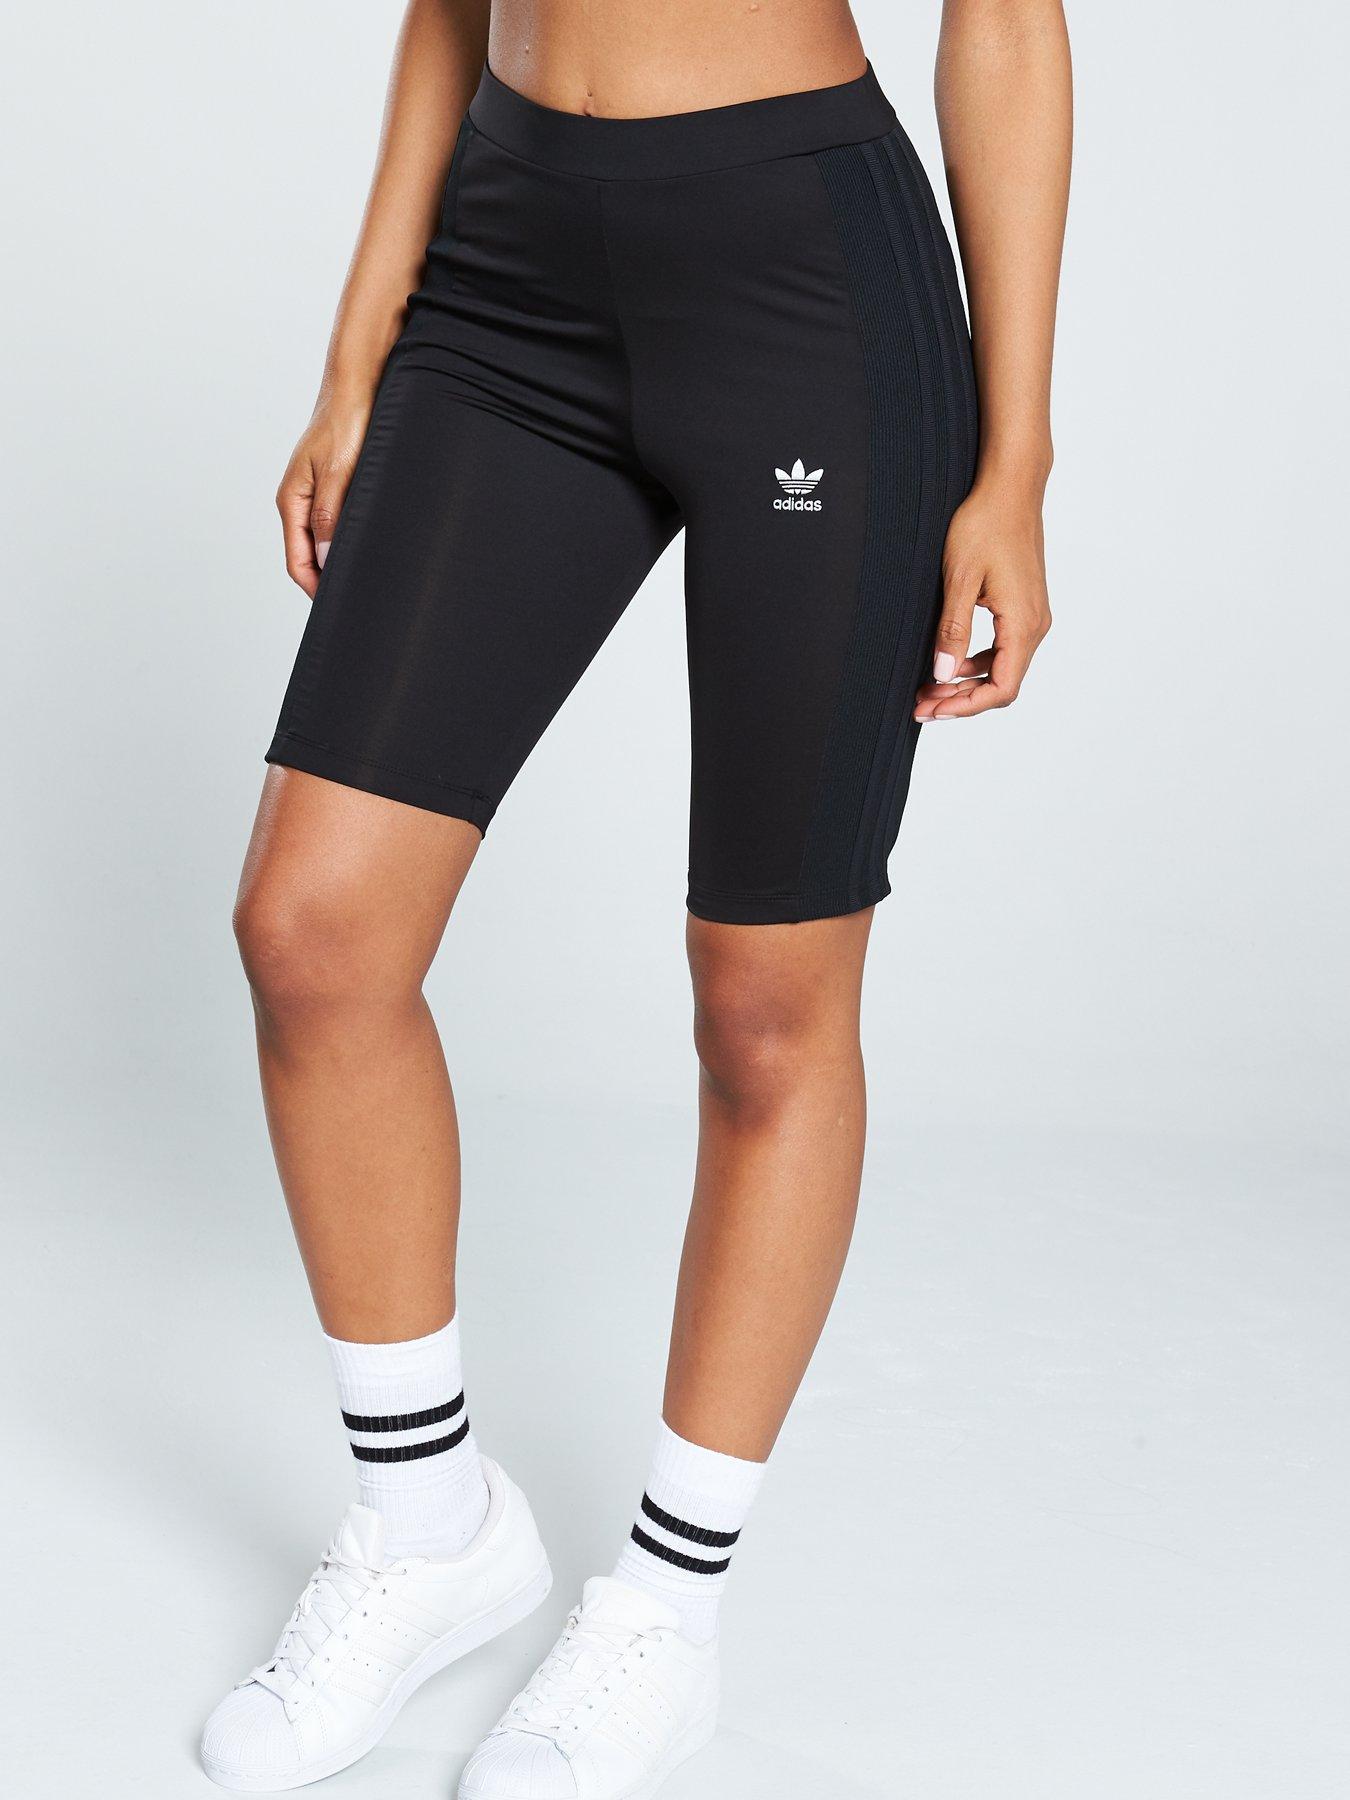 adidas cycling clothing